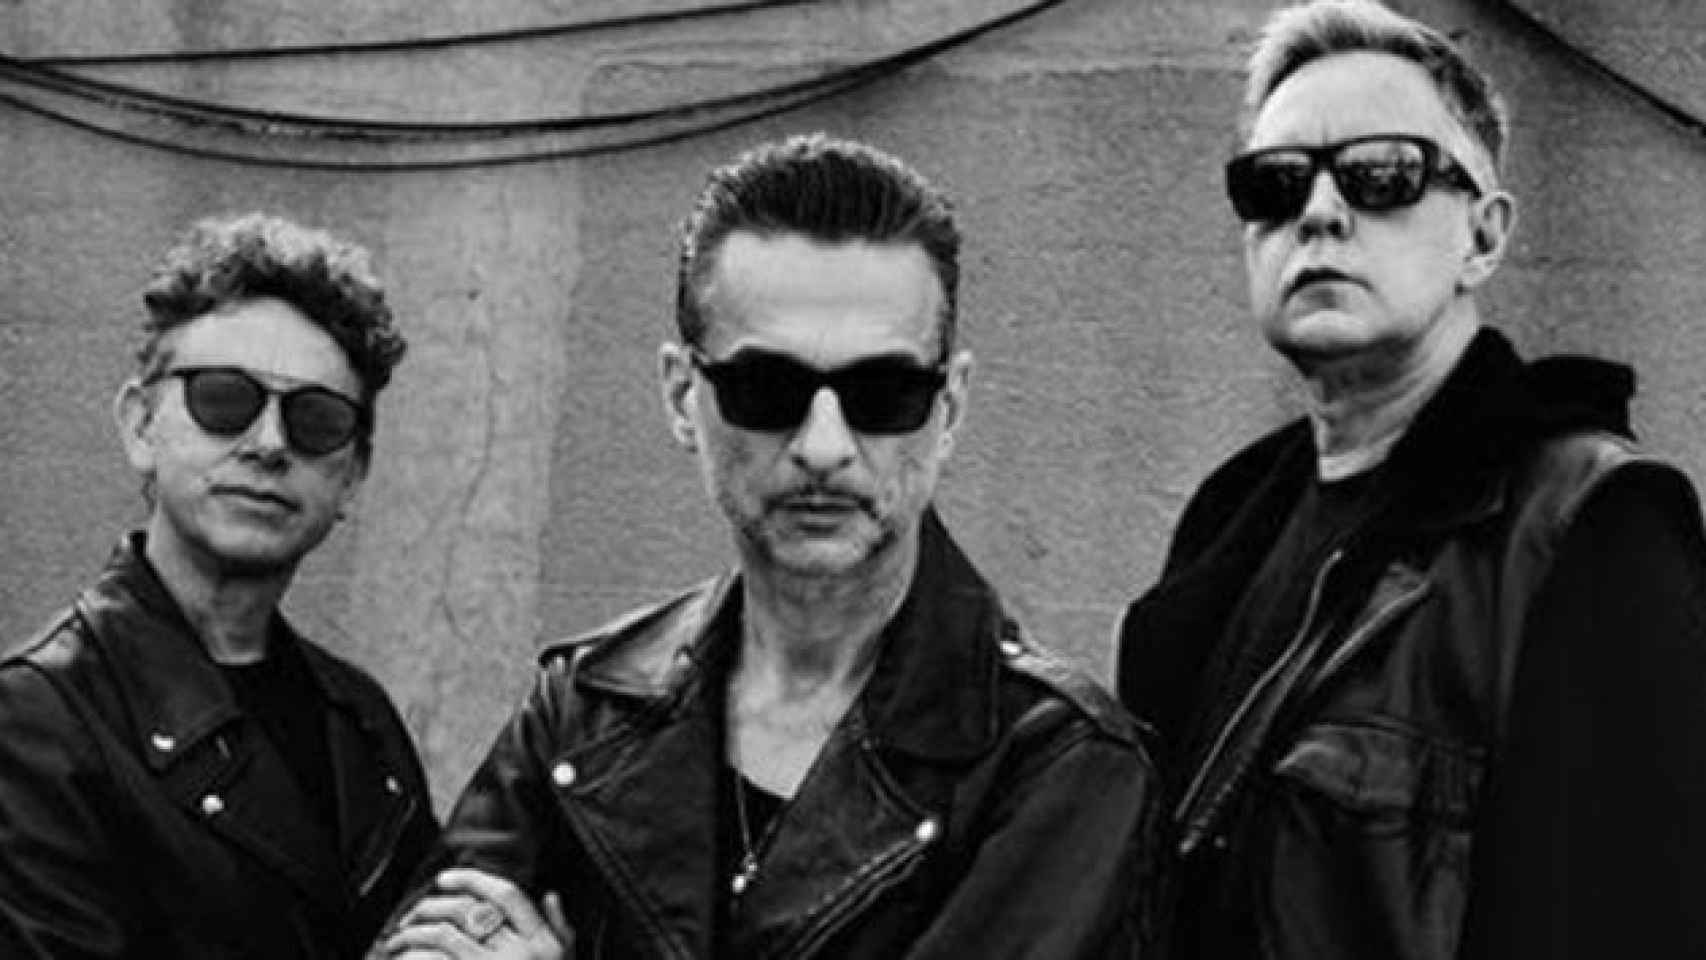 Depeche Mode actuará en Barcelona y Madrid en diciembre